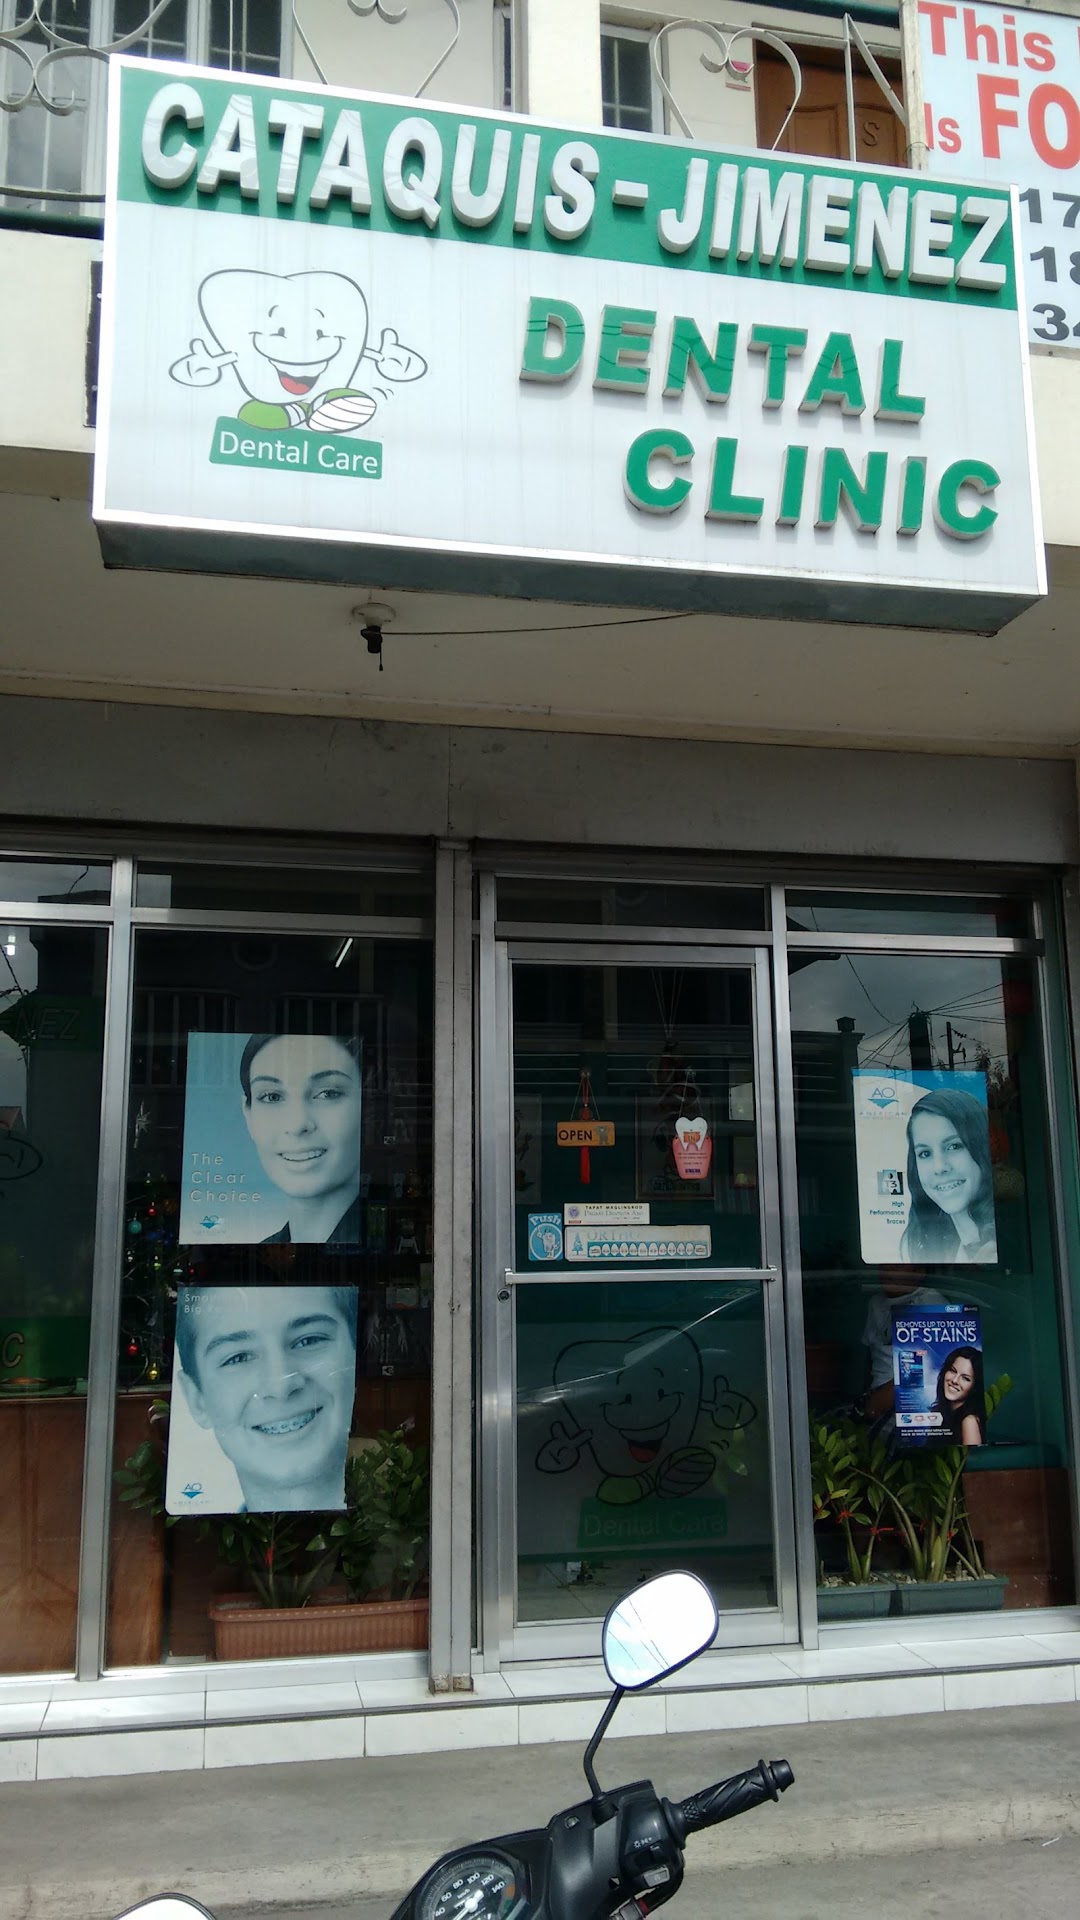 Cataquis-Jimenez Dental Clinic